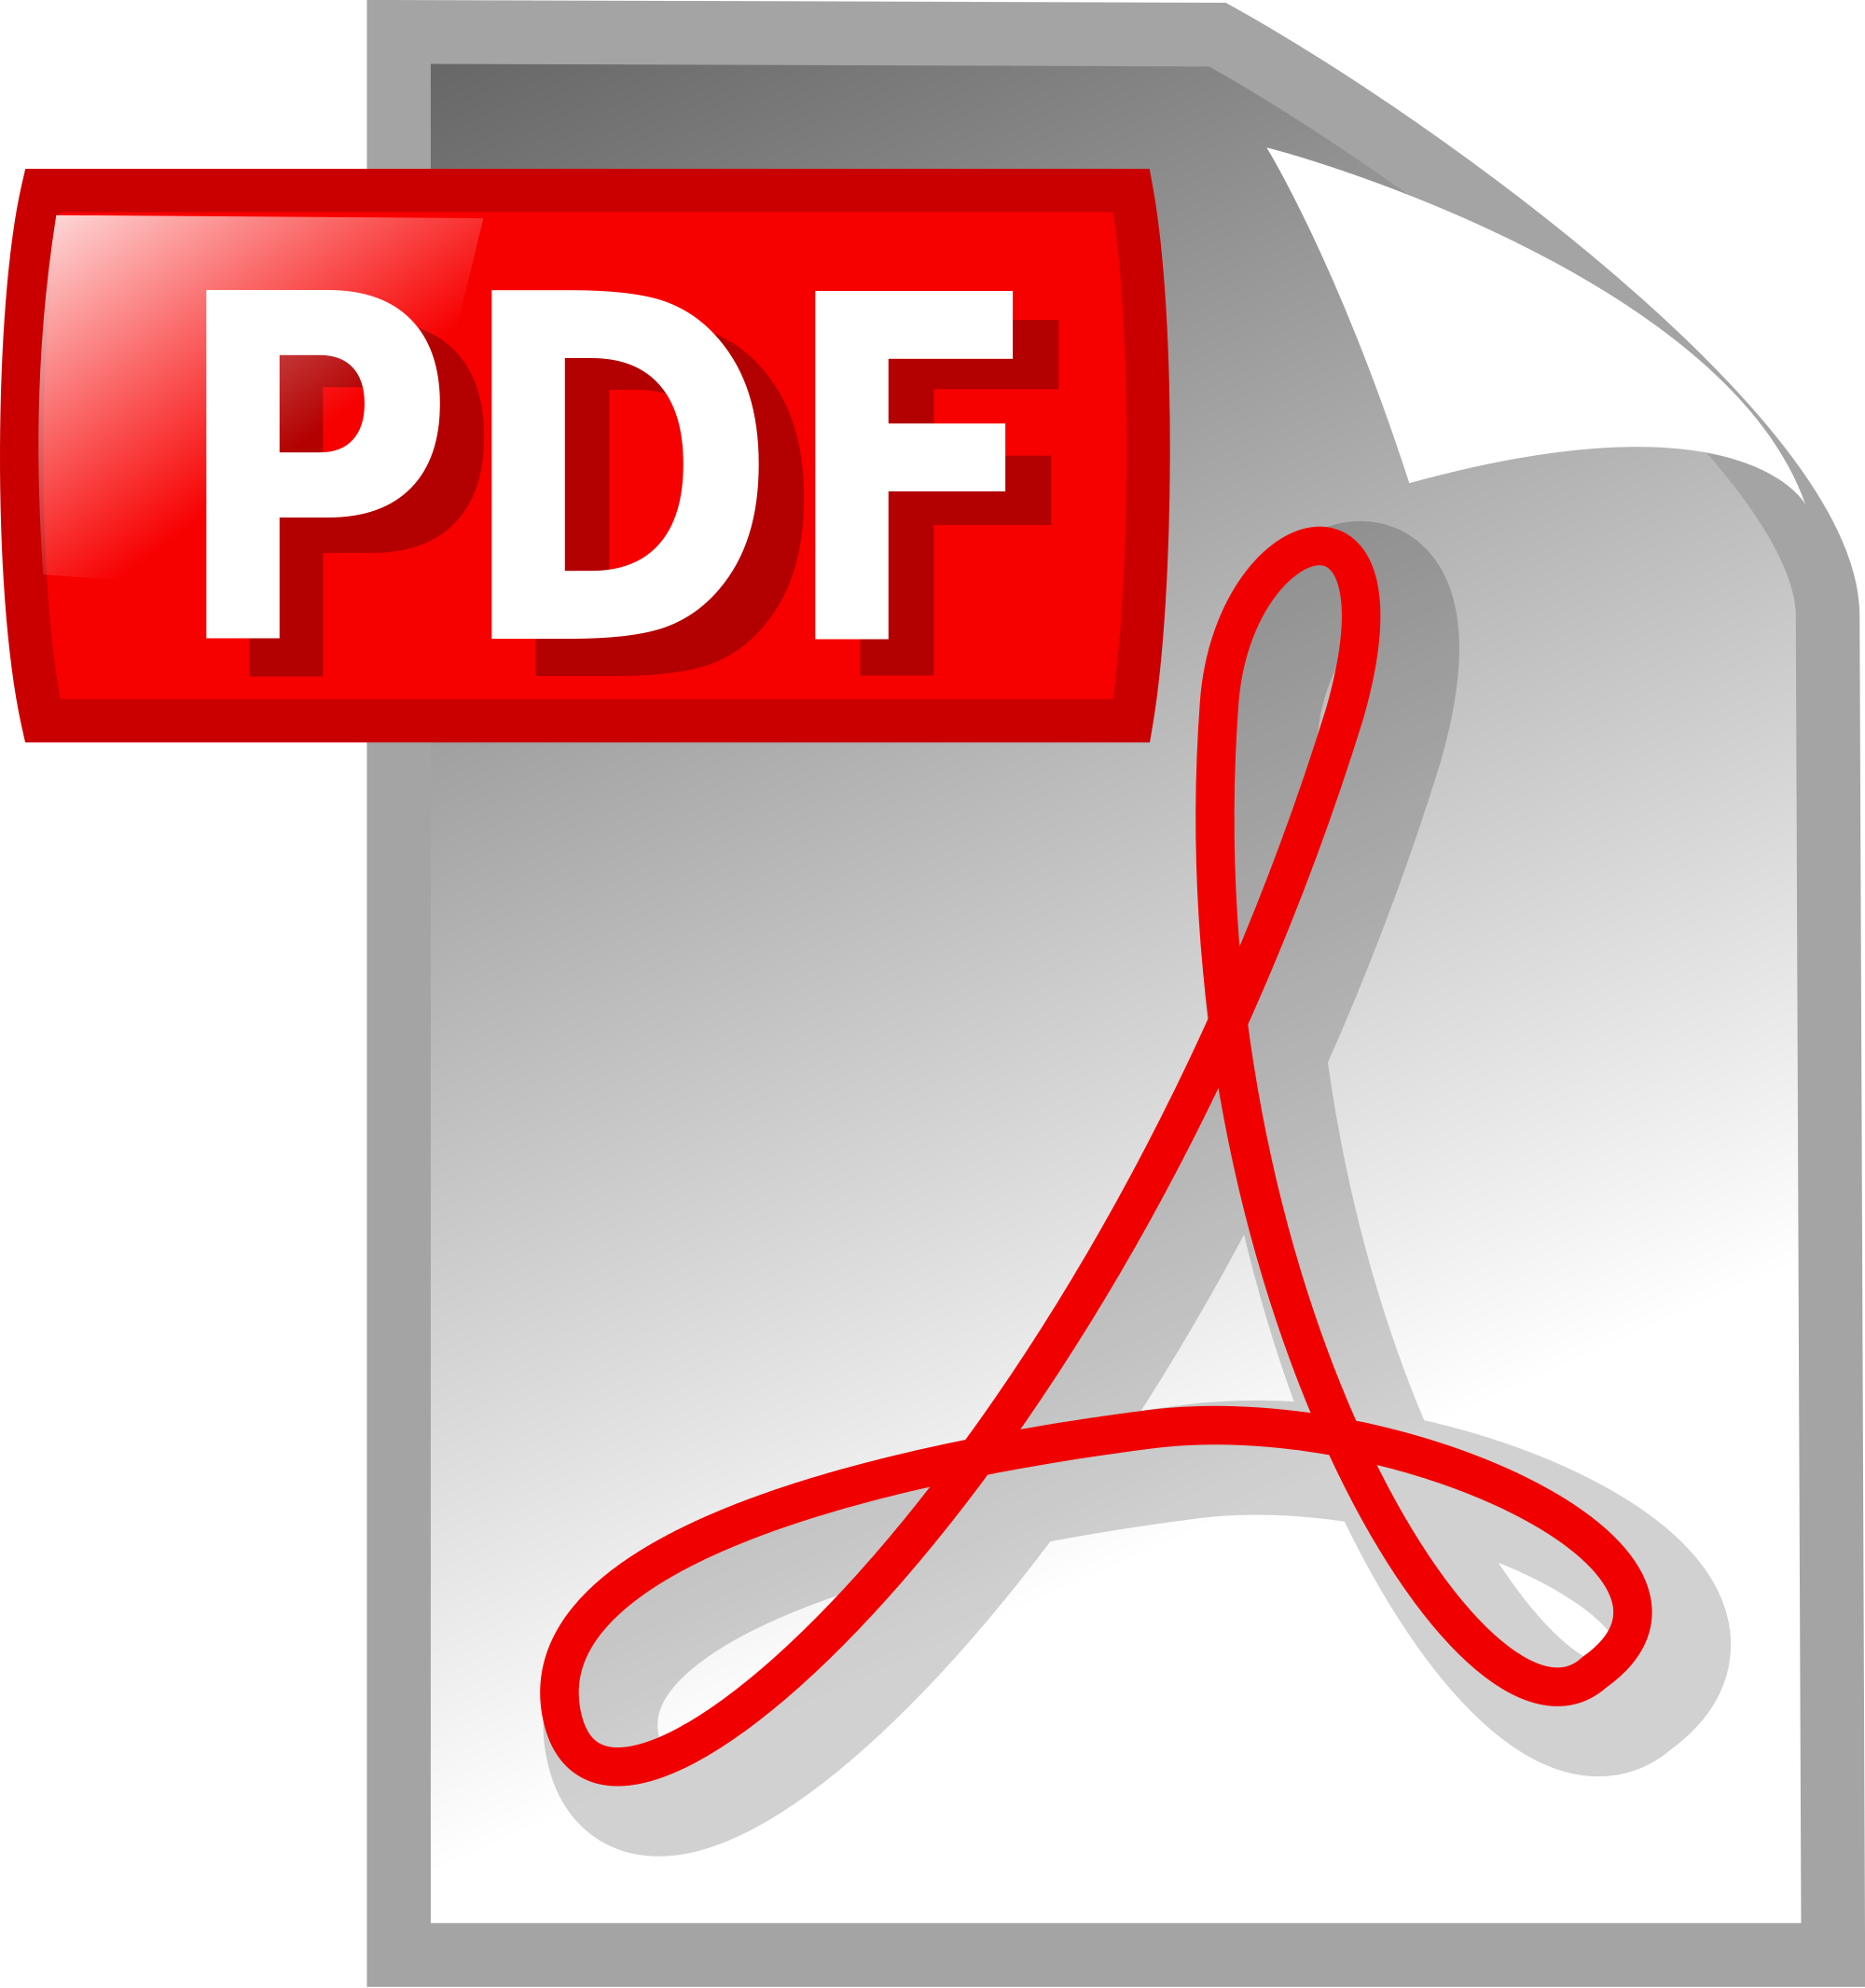 Pdf offline. Пдф файл. Значок pdf. Пдф картинки. Пиктограмма pdf.